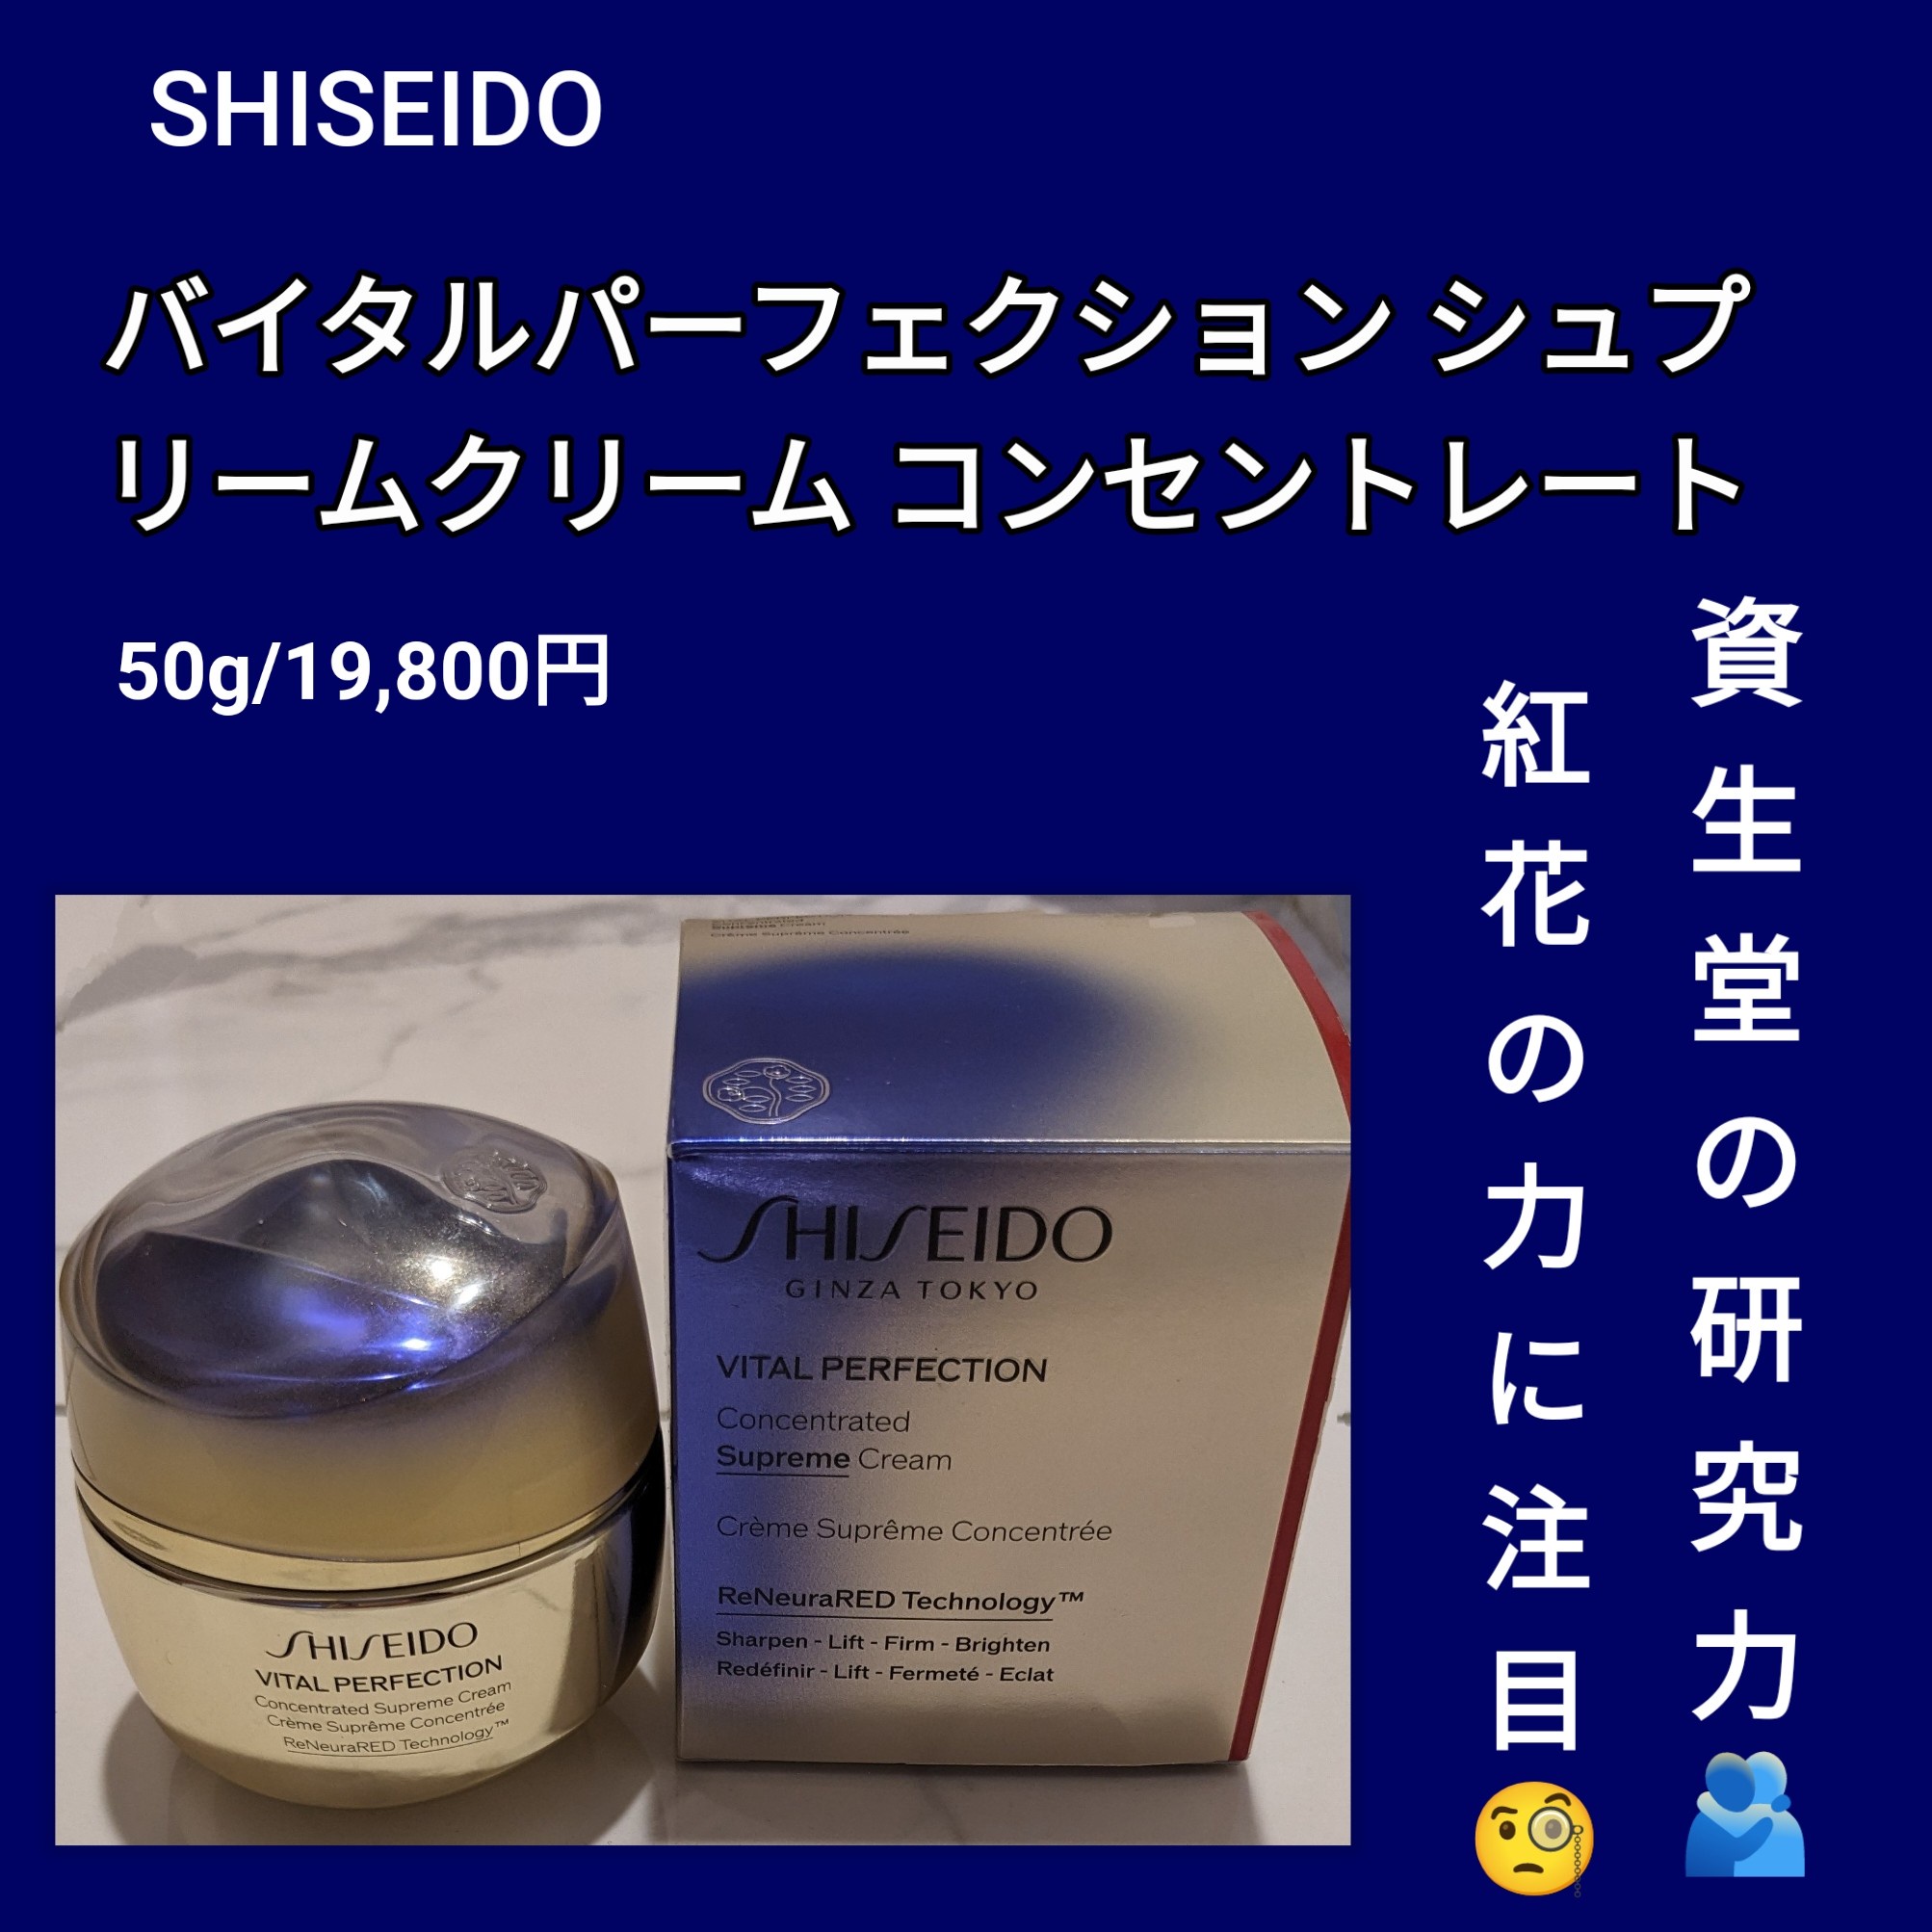 SHISEIDO / バイタルパーフェクション シュプリームクリーム ...